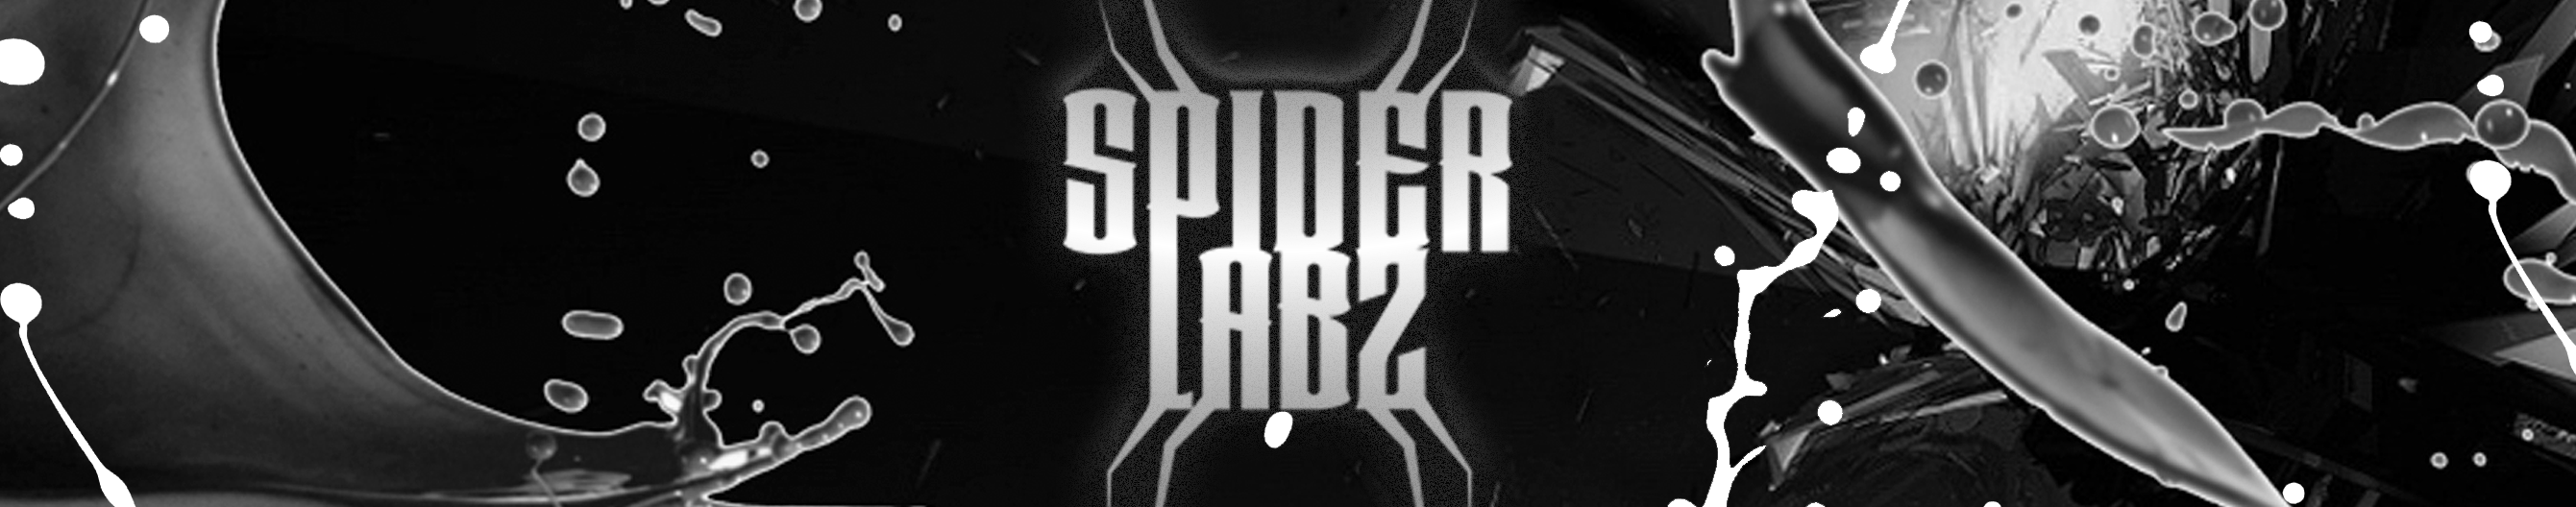 Spider Labz®'s profile banner